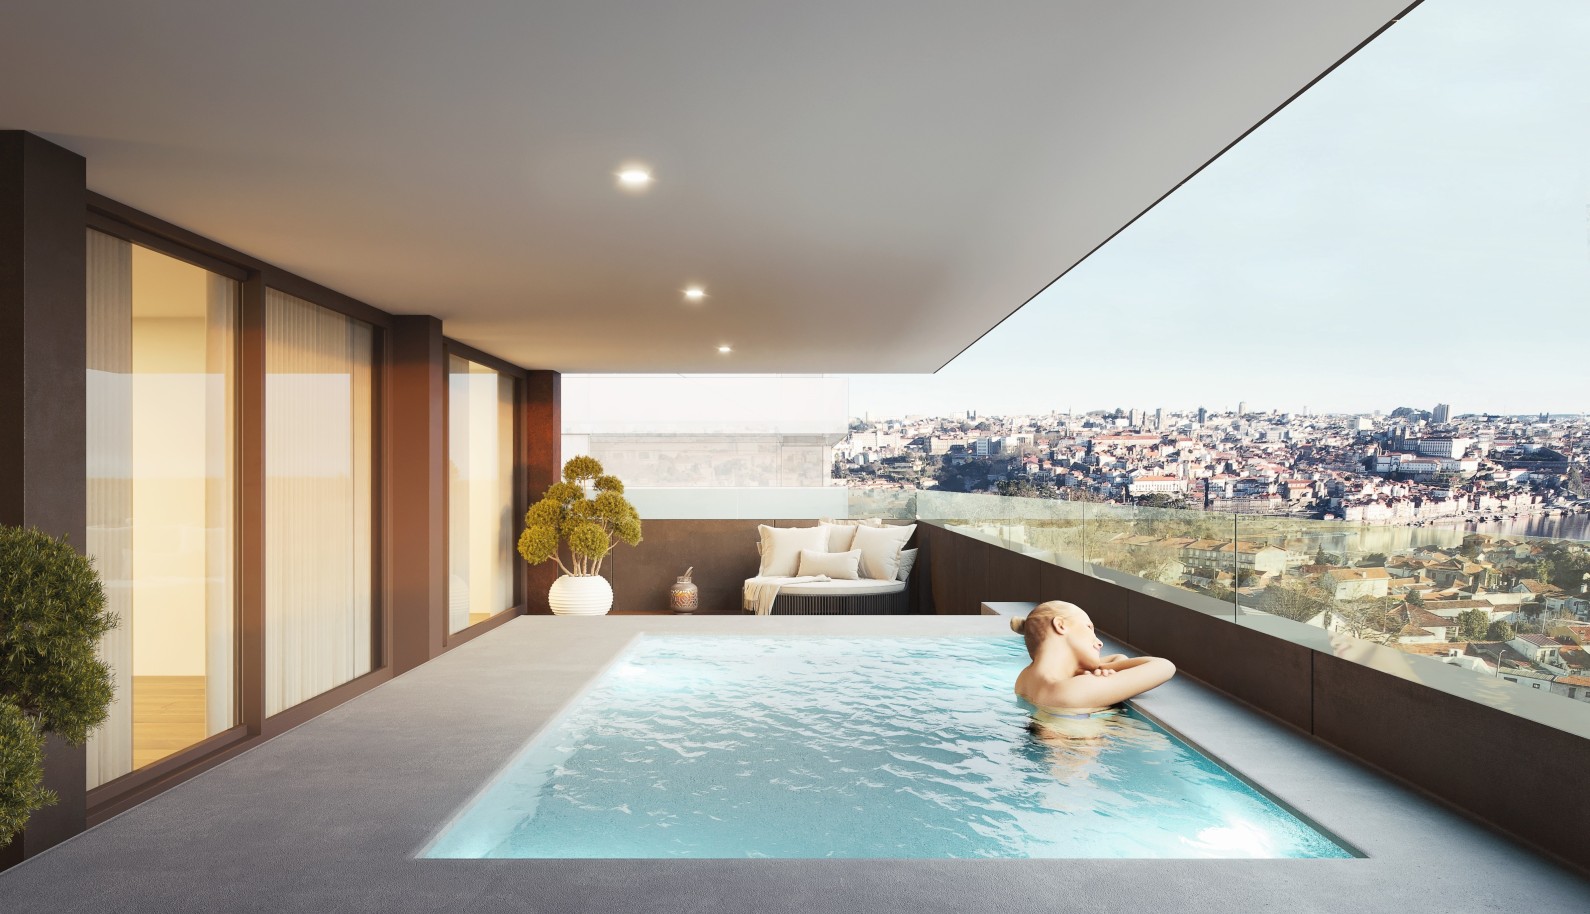 Apartamento novo com piscina, para venda, em Gaia, Porto, Portugal_240323